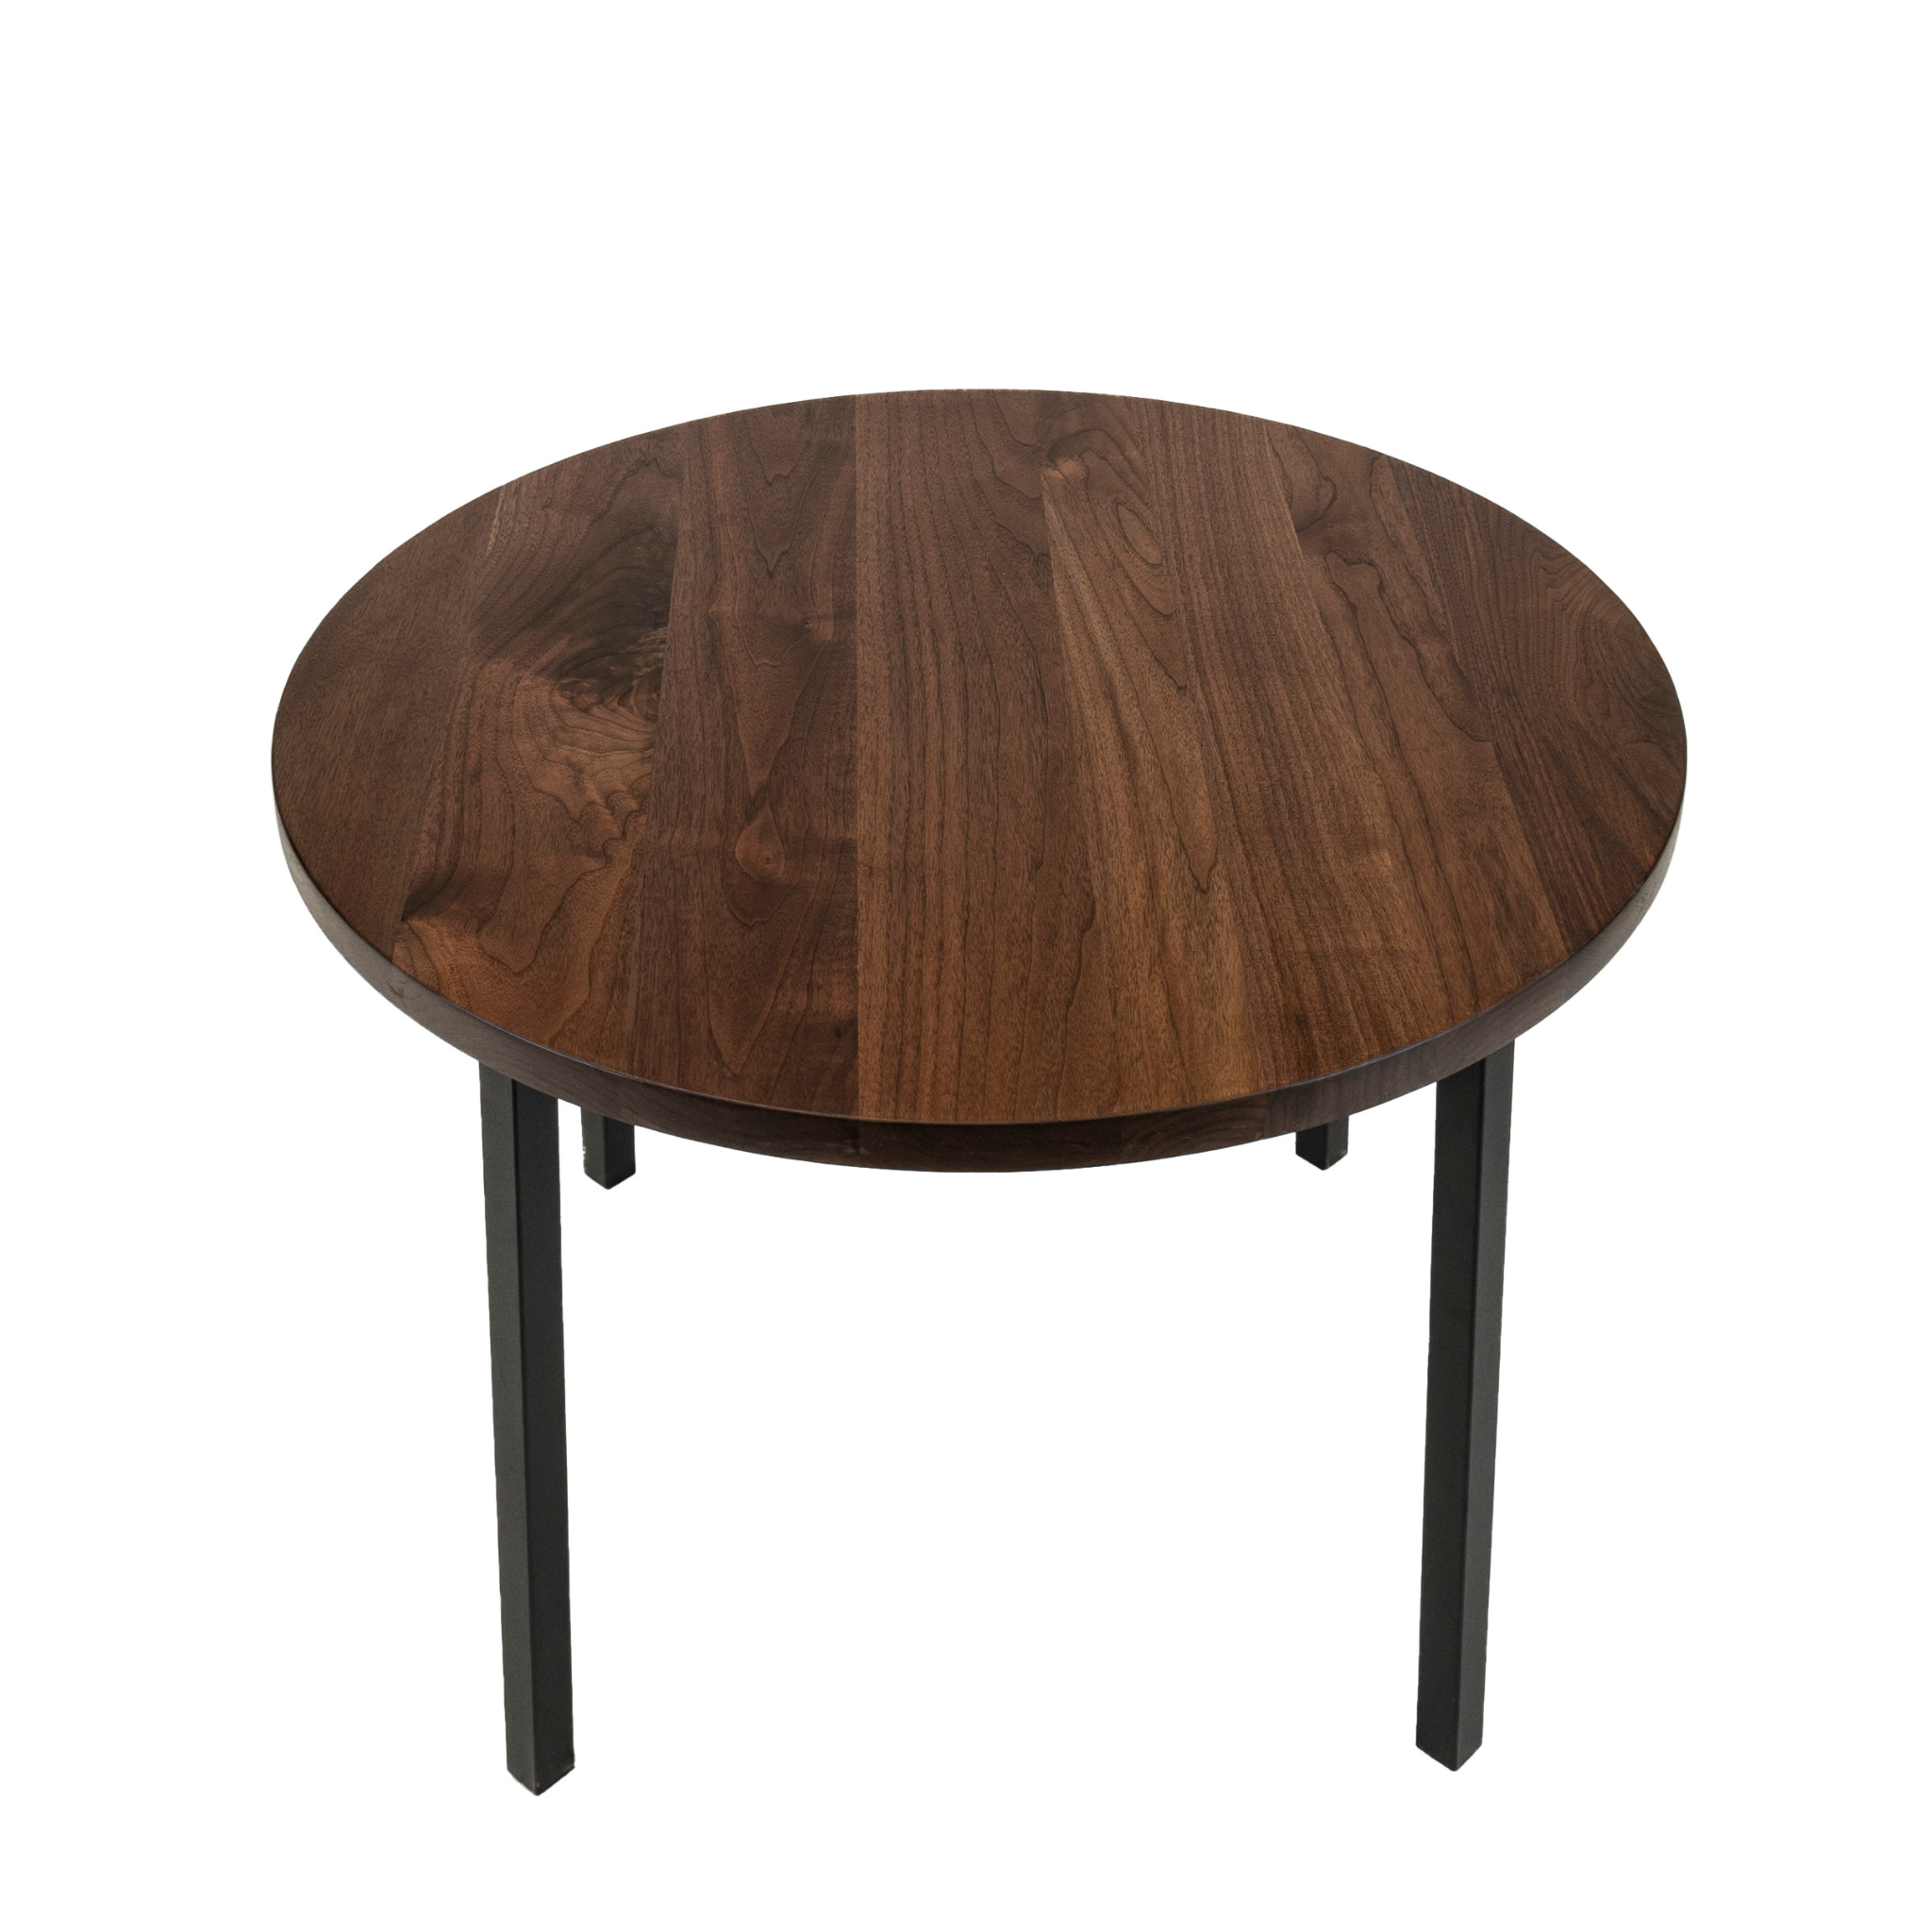 Round black walnut kitchen table. Designed by Urban Industrial Design.